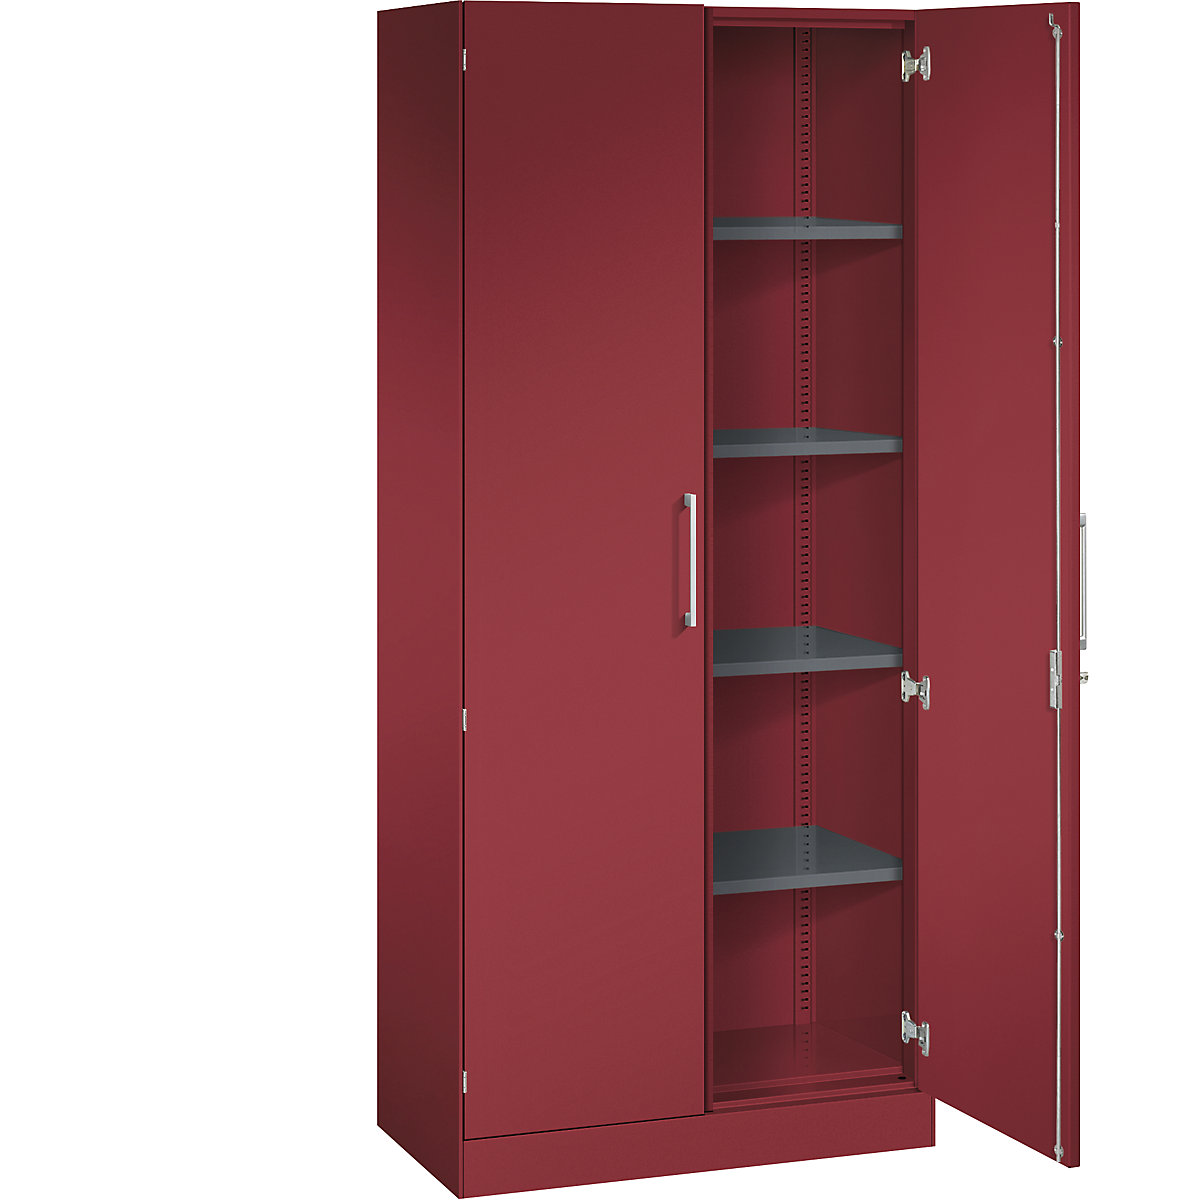 Szafa z drzwiami skrzydłowymi ASISTO, wys. 1980 mm – C+P, szer. 800 mm, 4 półki, rubinowo-czerwony/rubinowo-czerwony